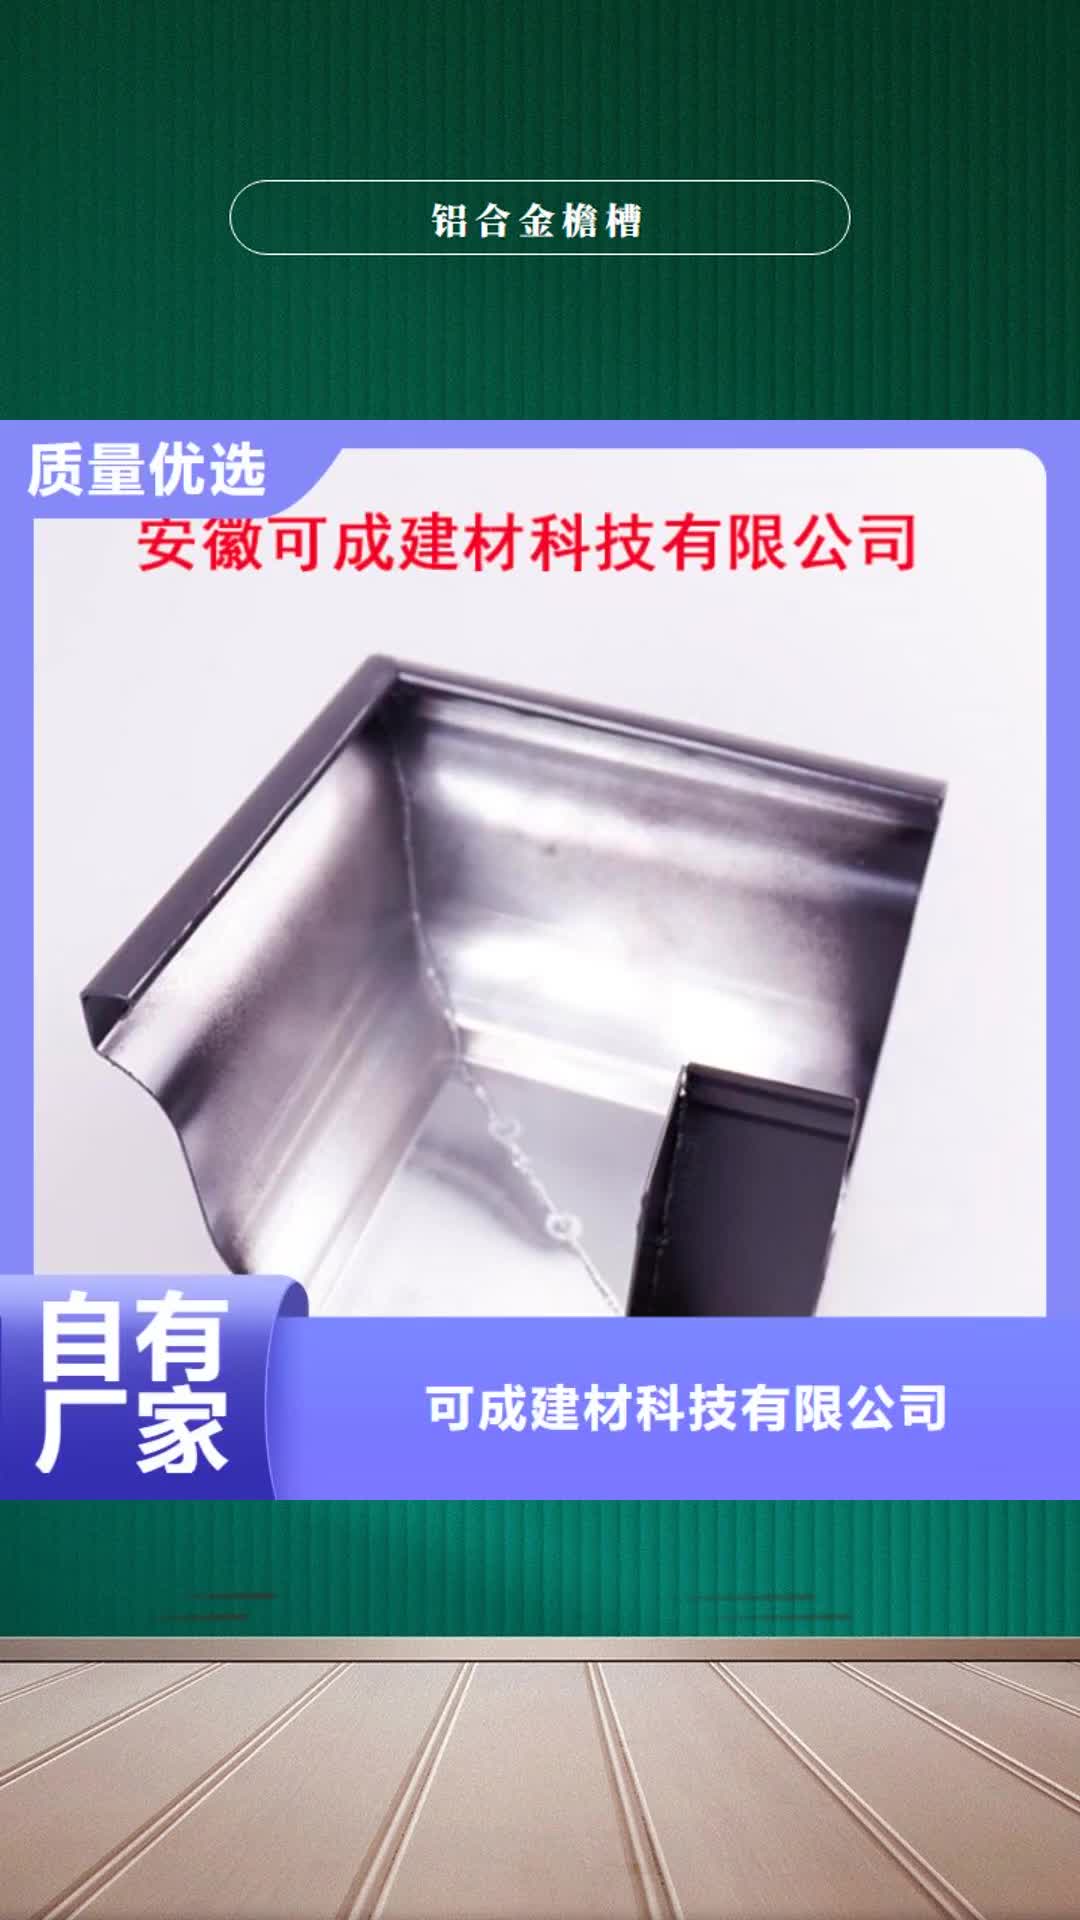 巢湖 铝合金檐槽【PVC雨水管】批发货源